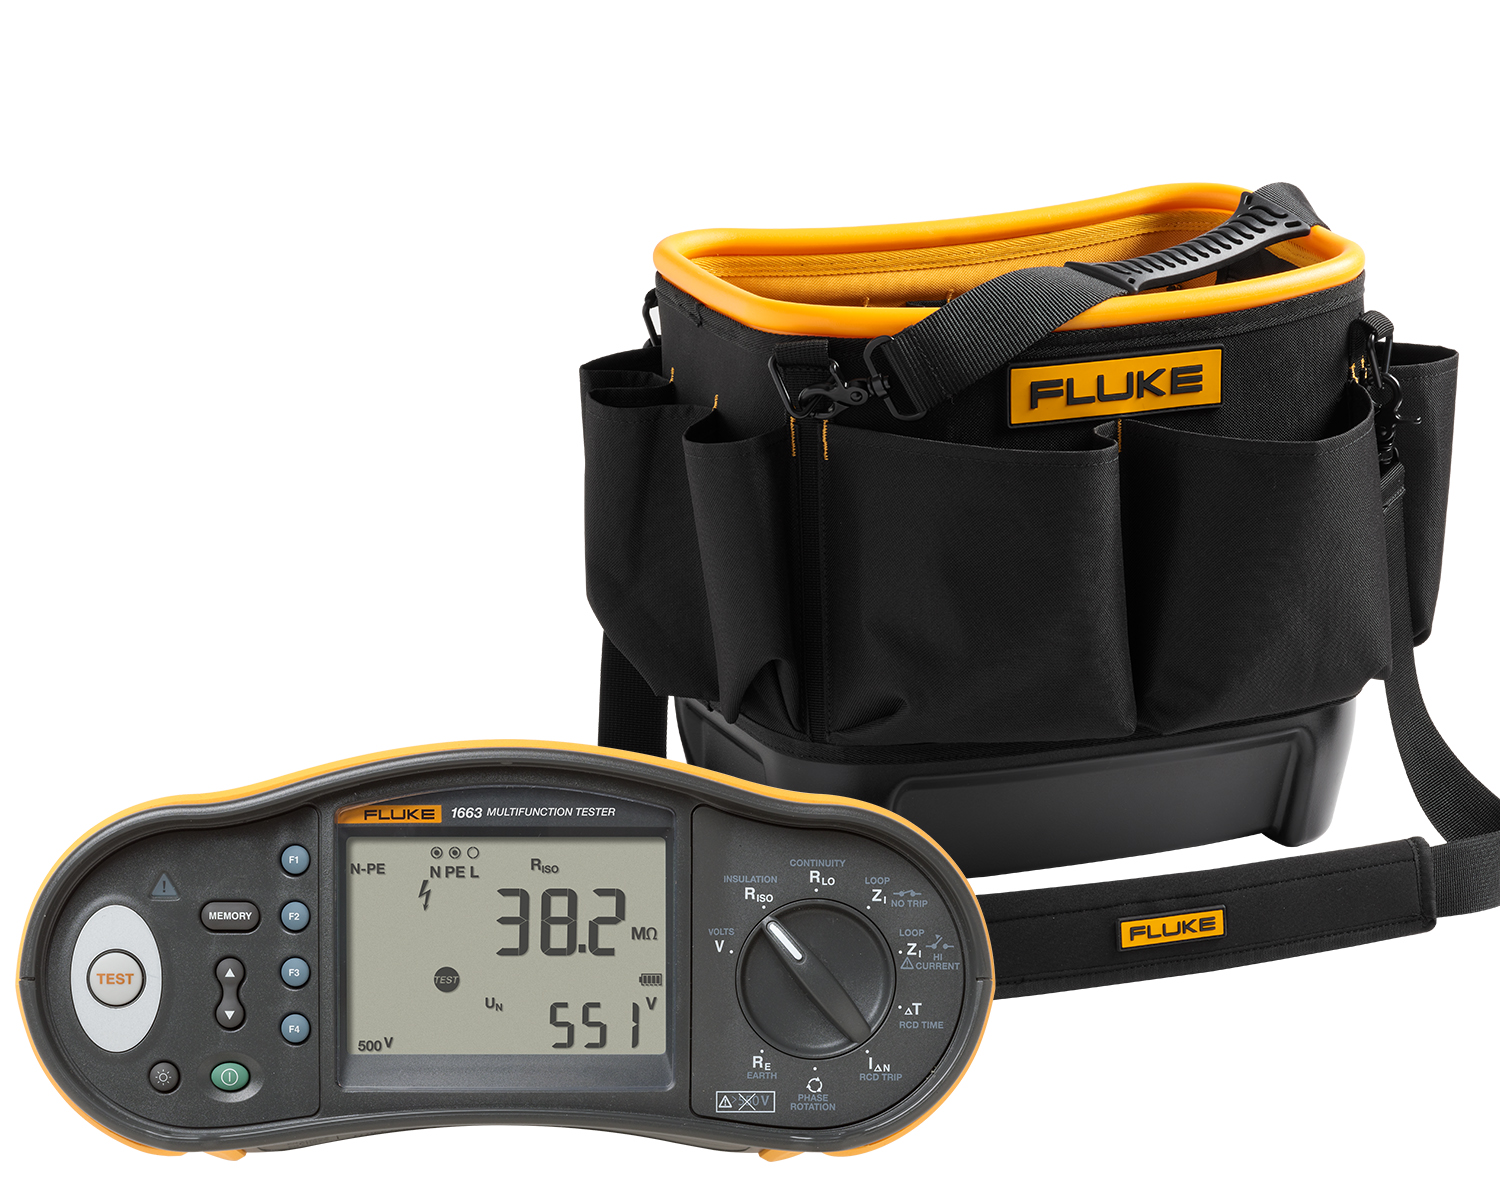 Achetez un testeur d’installation multifonction Fluke 1663 et recevez un sac de rangement d’outils rigide Fluke TB25 gratuit